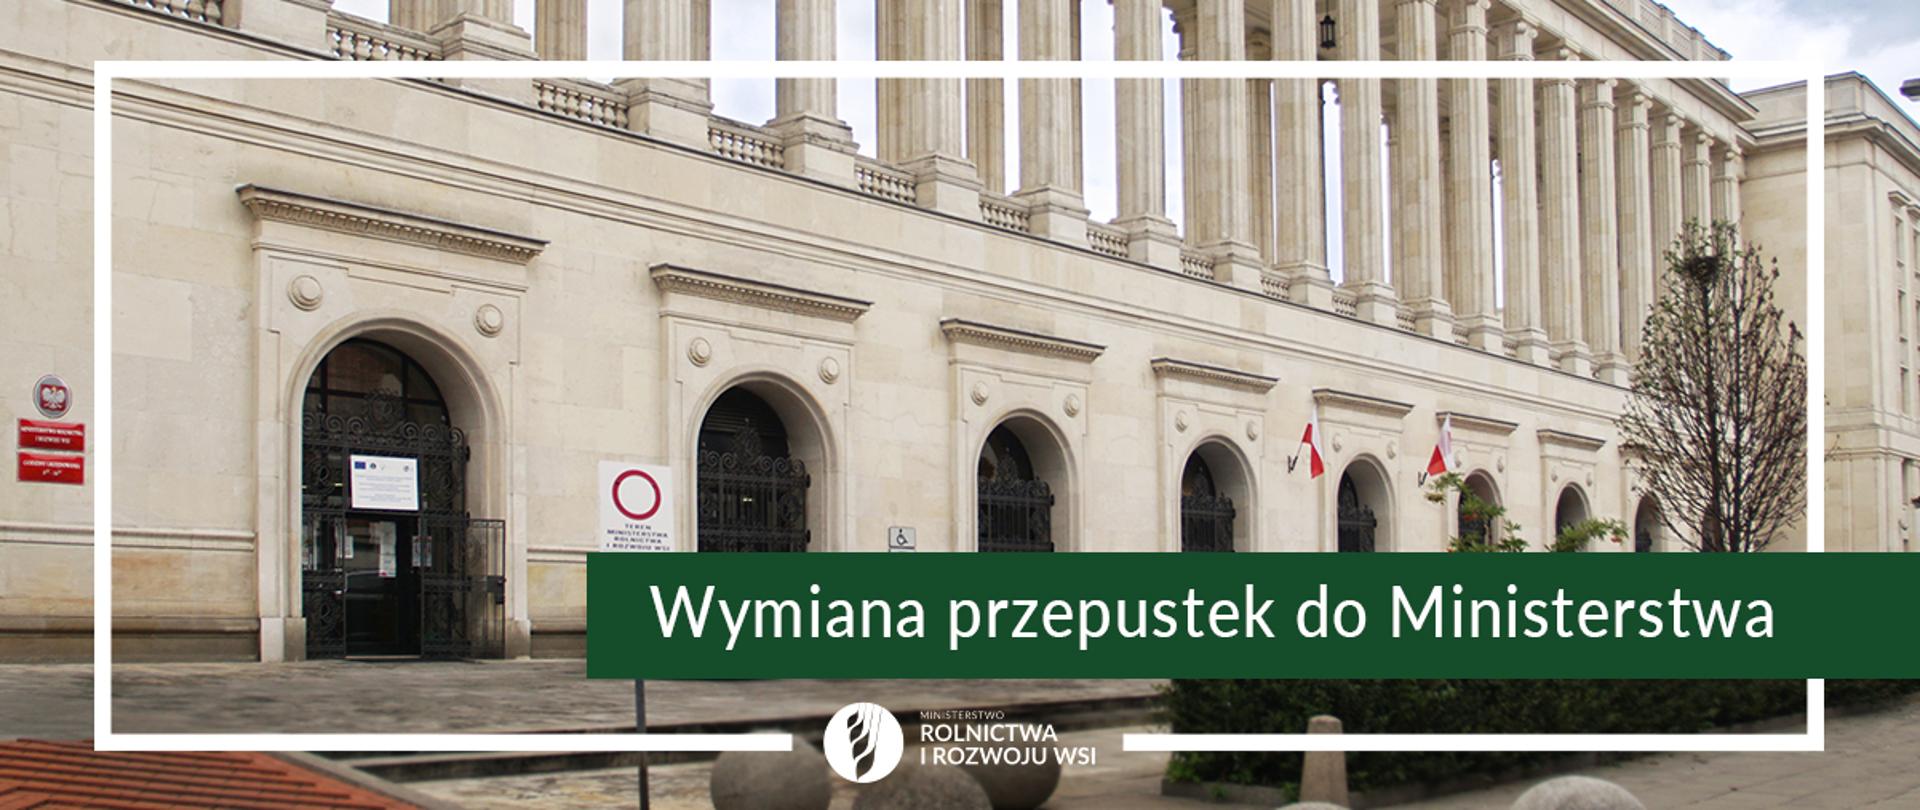 Infografika do komunikatu "Wymiana przepustek". Budynek Ministerstwa Rolnictwa i Rozwoju Wsi.